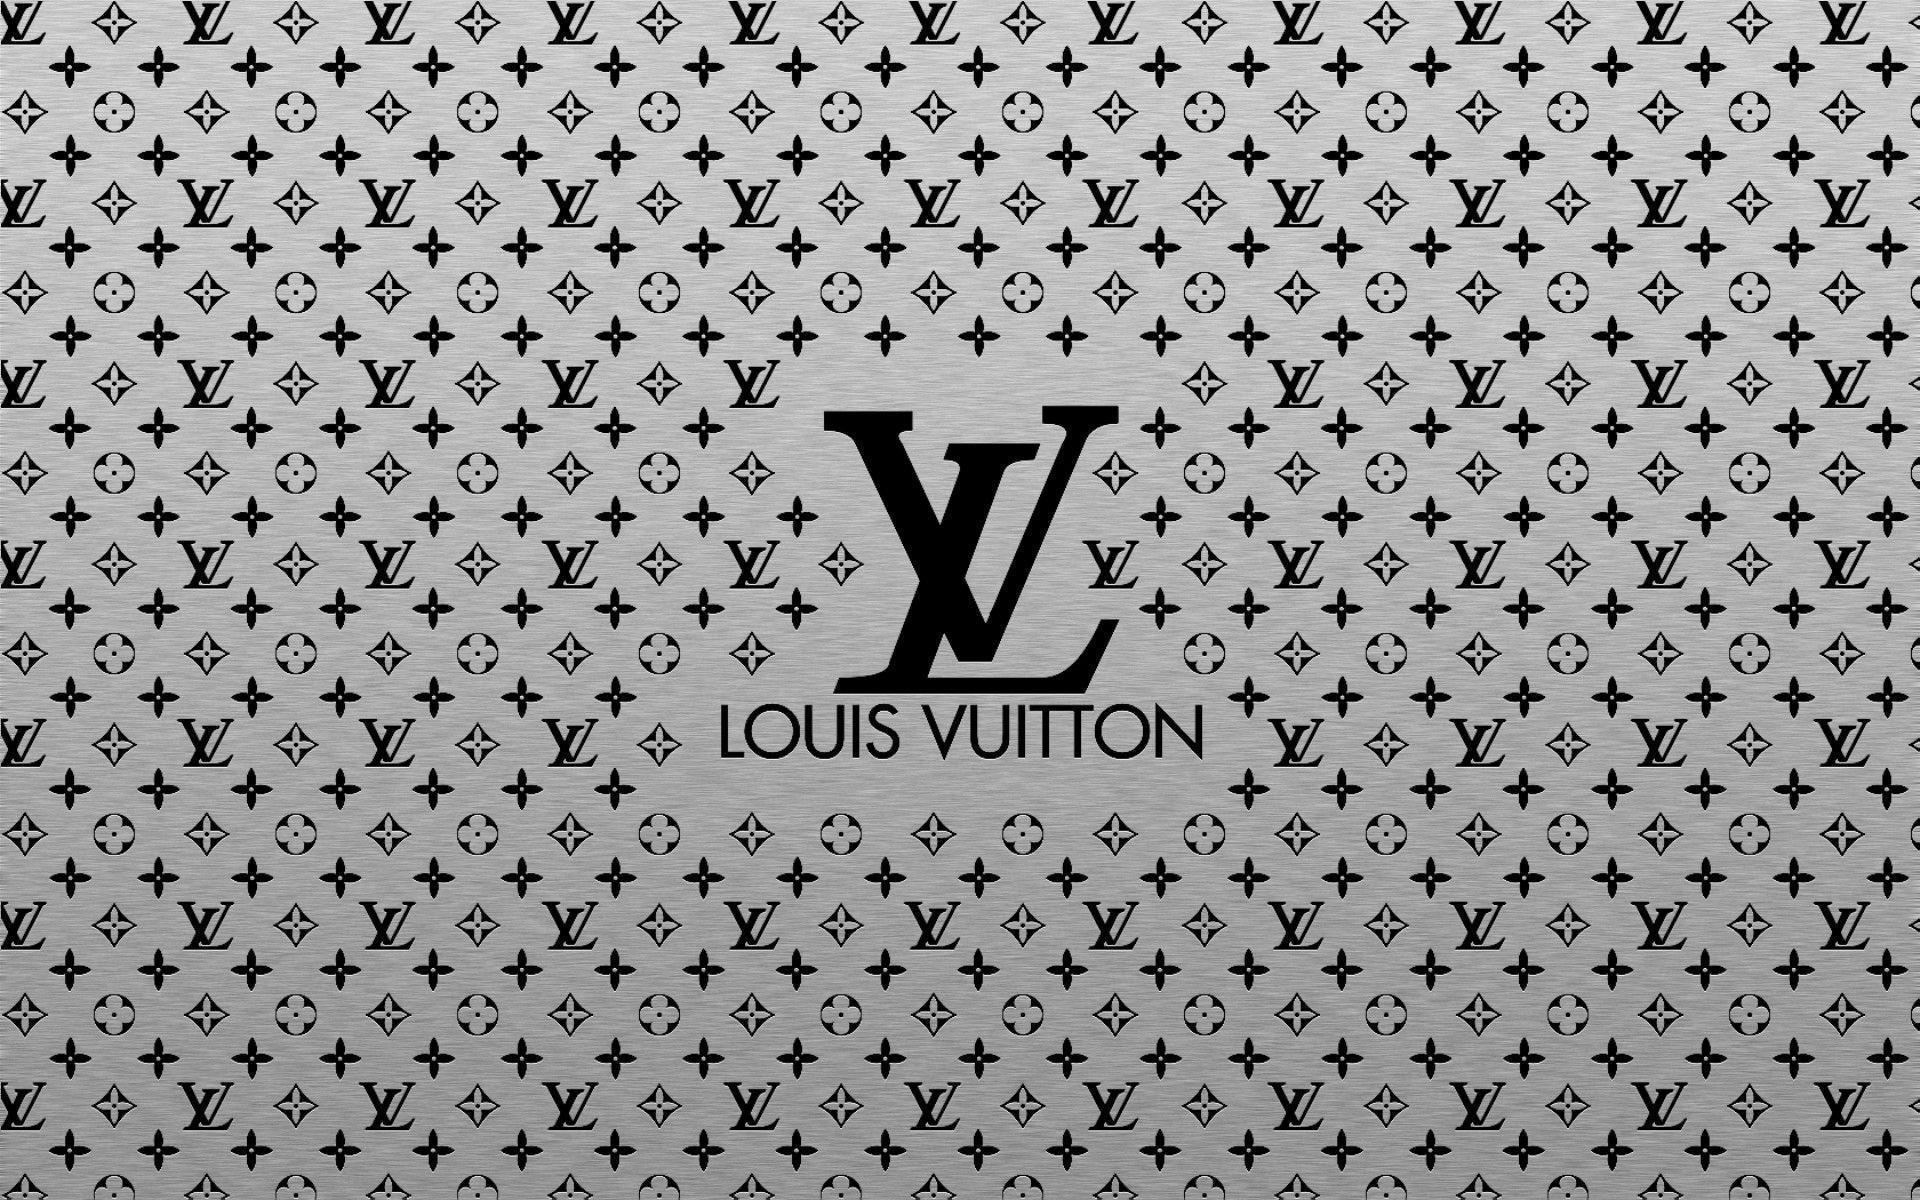 Louis Vuitton Backgrounds - Wallpaper Cave